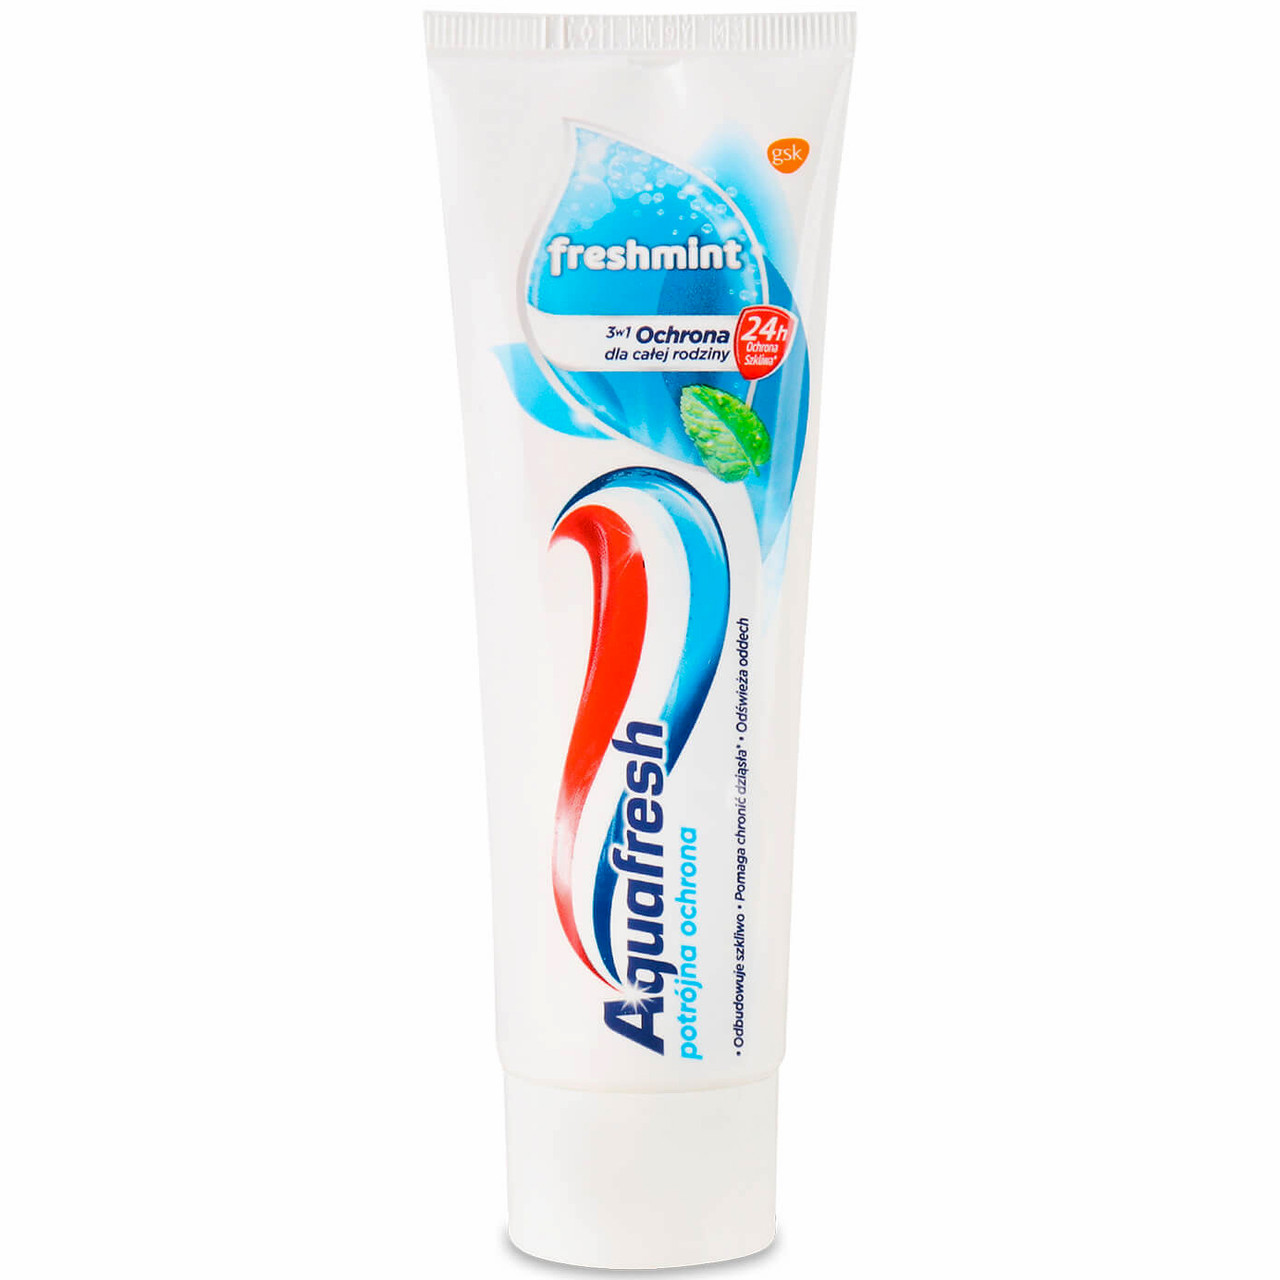 Зубна паста Aquafresh Freshmint 75 мл